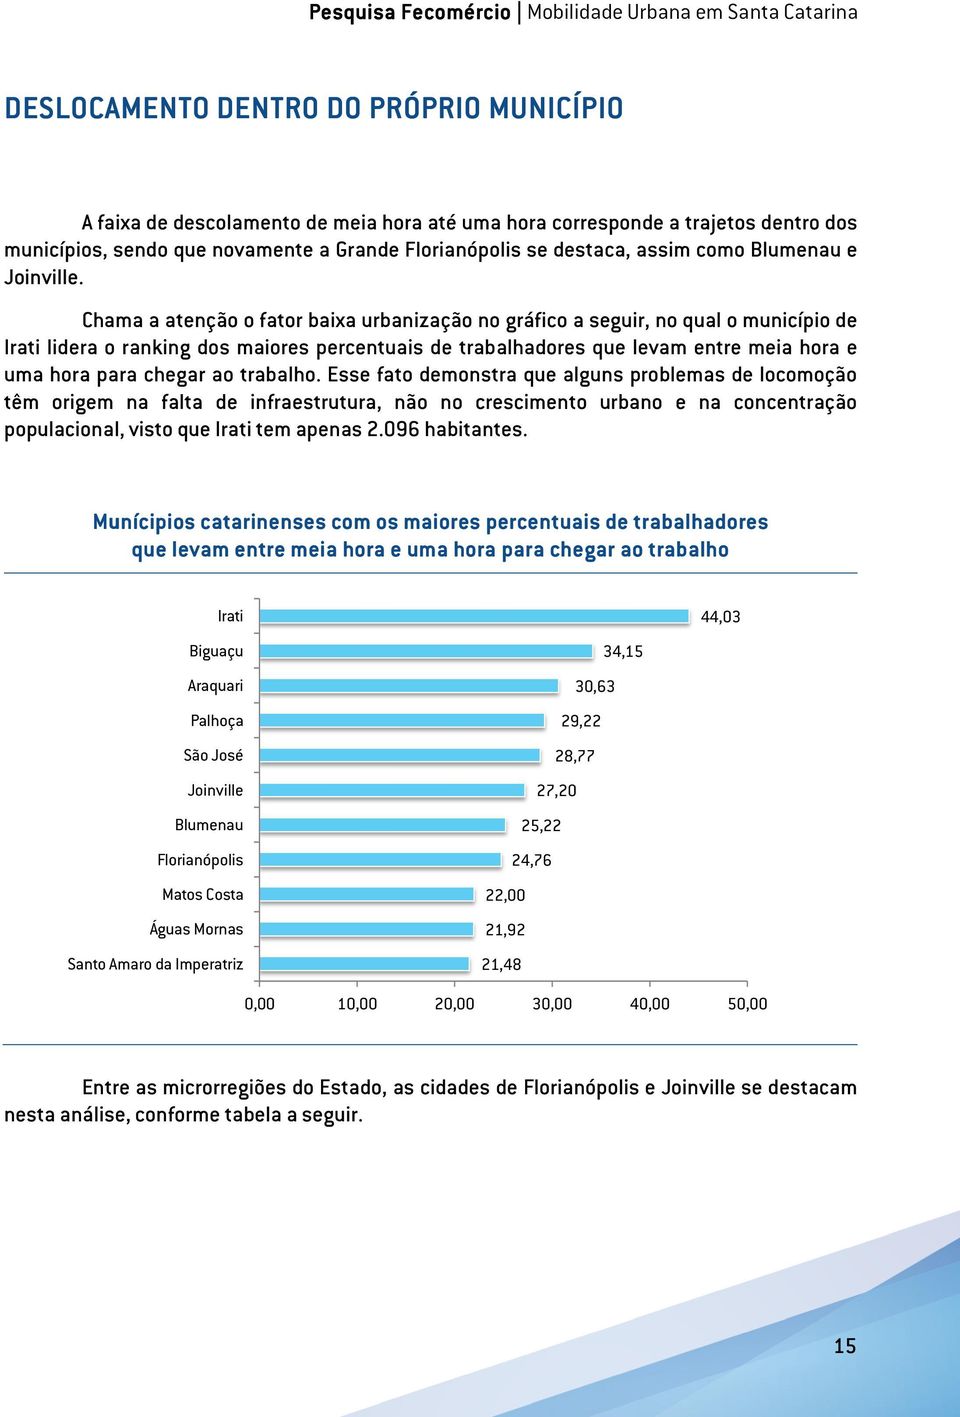 Chama a atenção o fator baixa urbanização no gráfico a seguir, no qual o município de Irati lidera o ranking dos maiores percentuais de trabalhadores que levam entre meia hora e uma hora para chegar